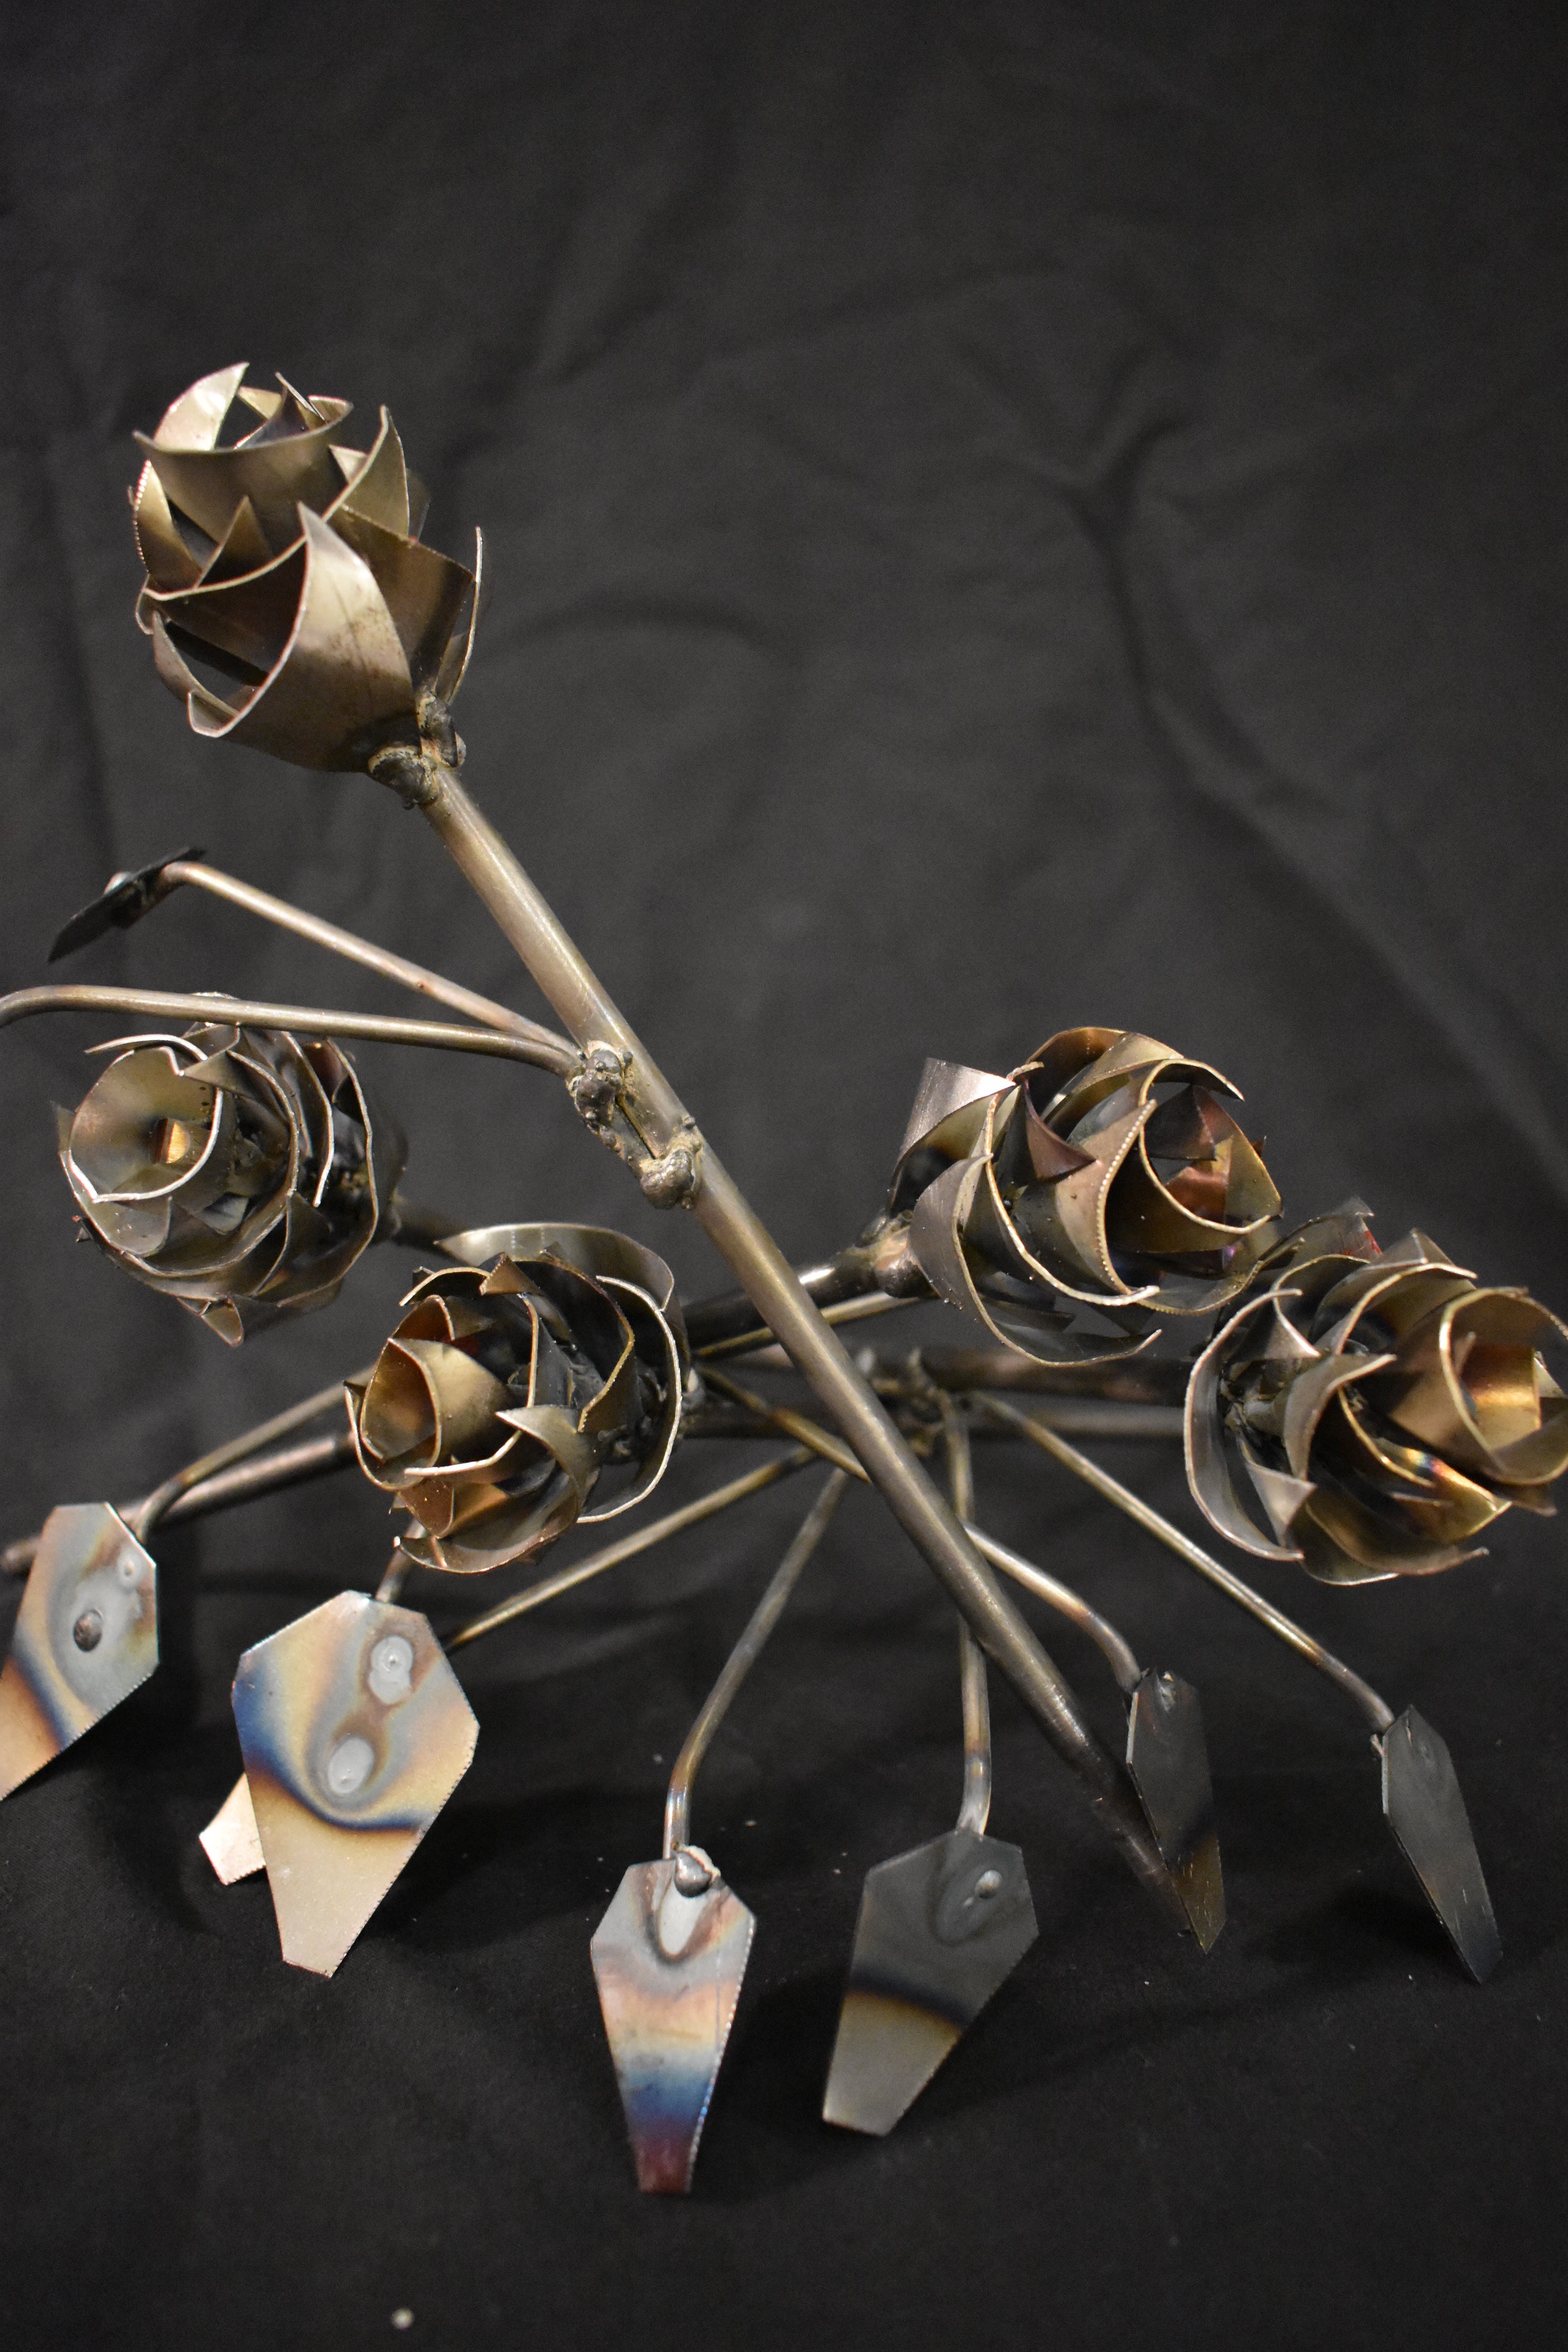 Steel roses